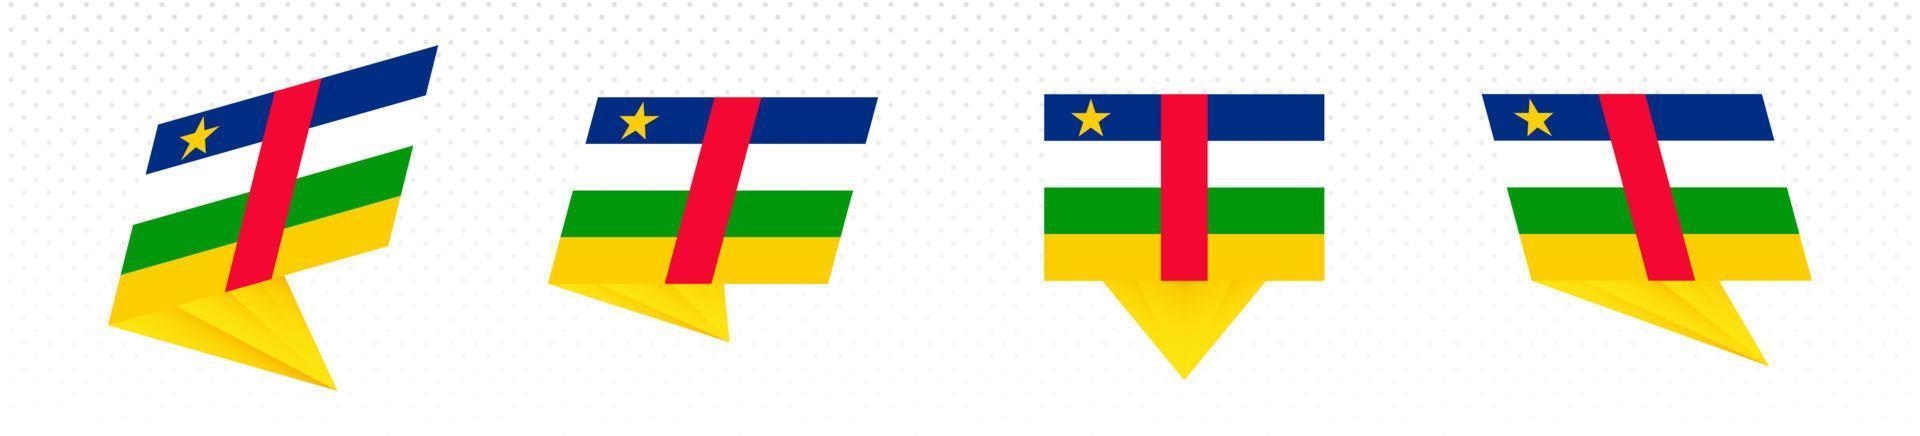 drapeau de la république centrafricaine dans un dessin abstrait moderne, ensemble de drapeaux. vecteur